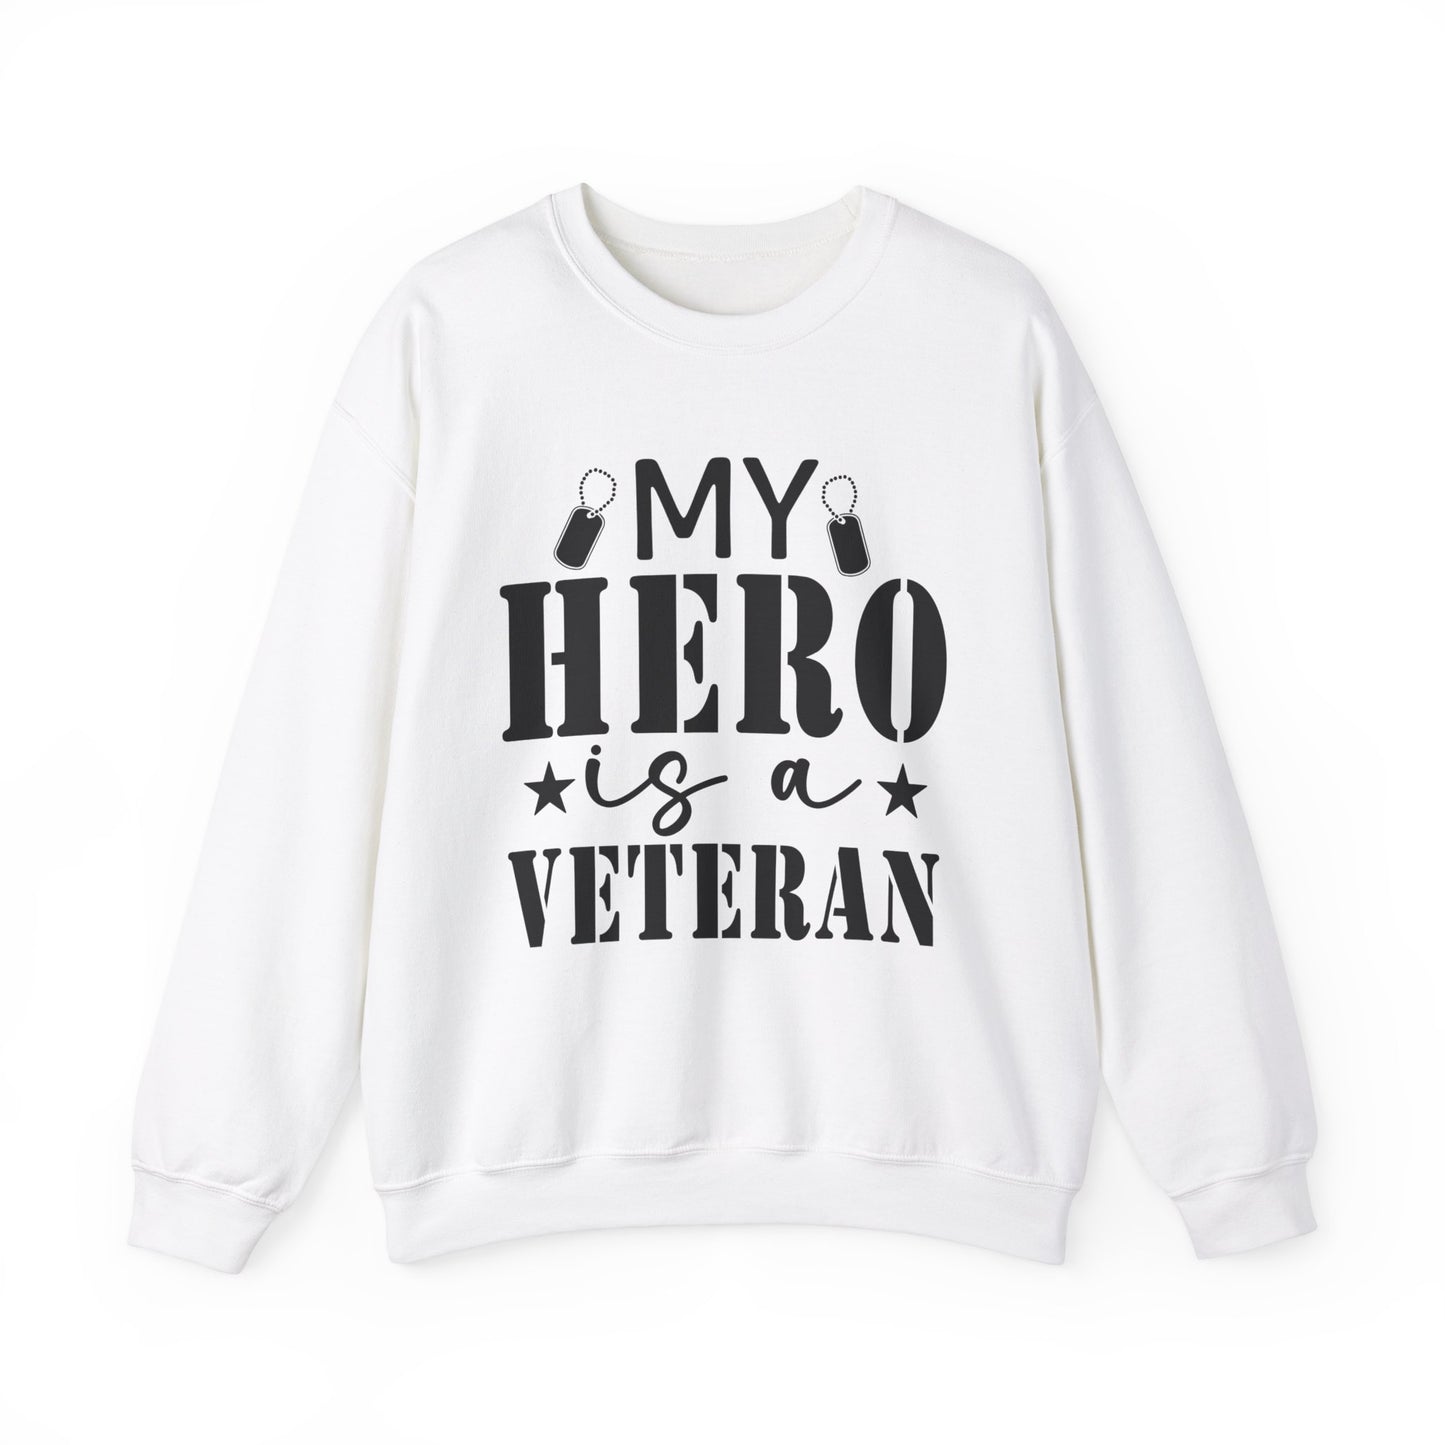 My Hero is a Veteran Women's Sweatshirt